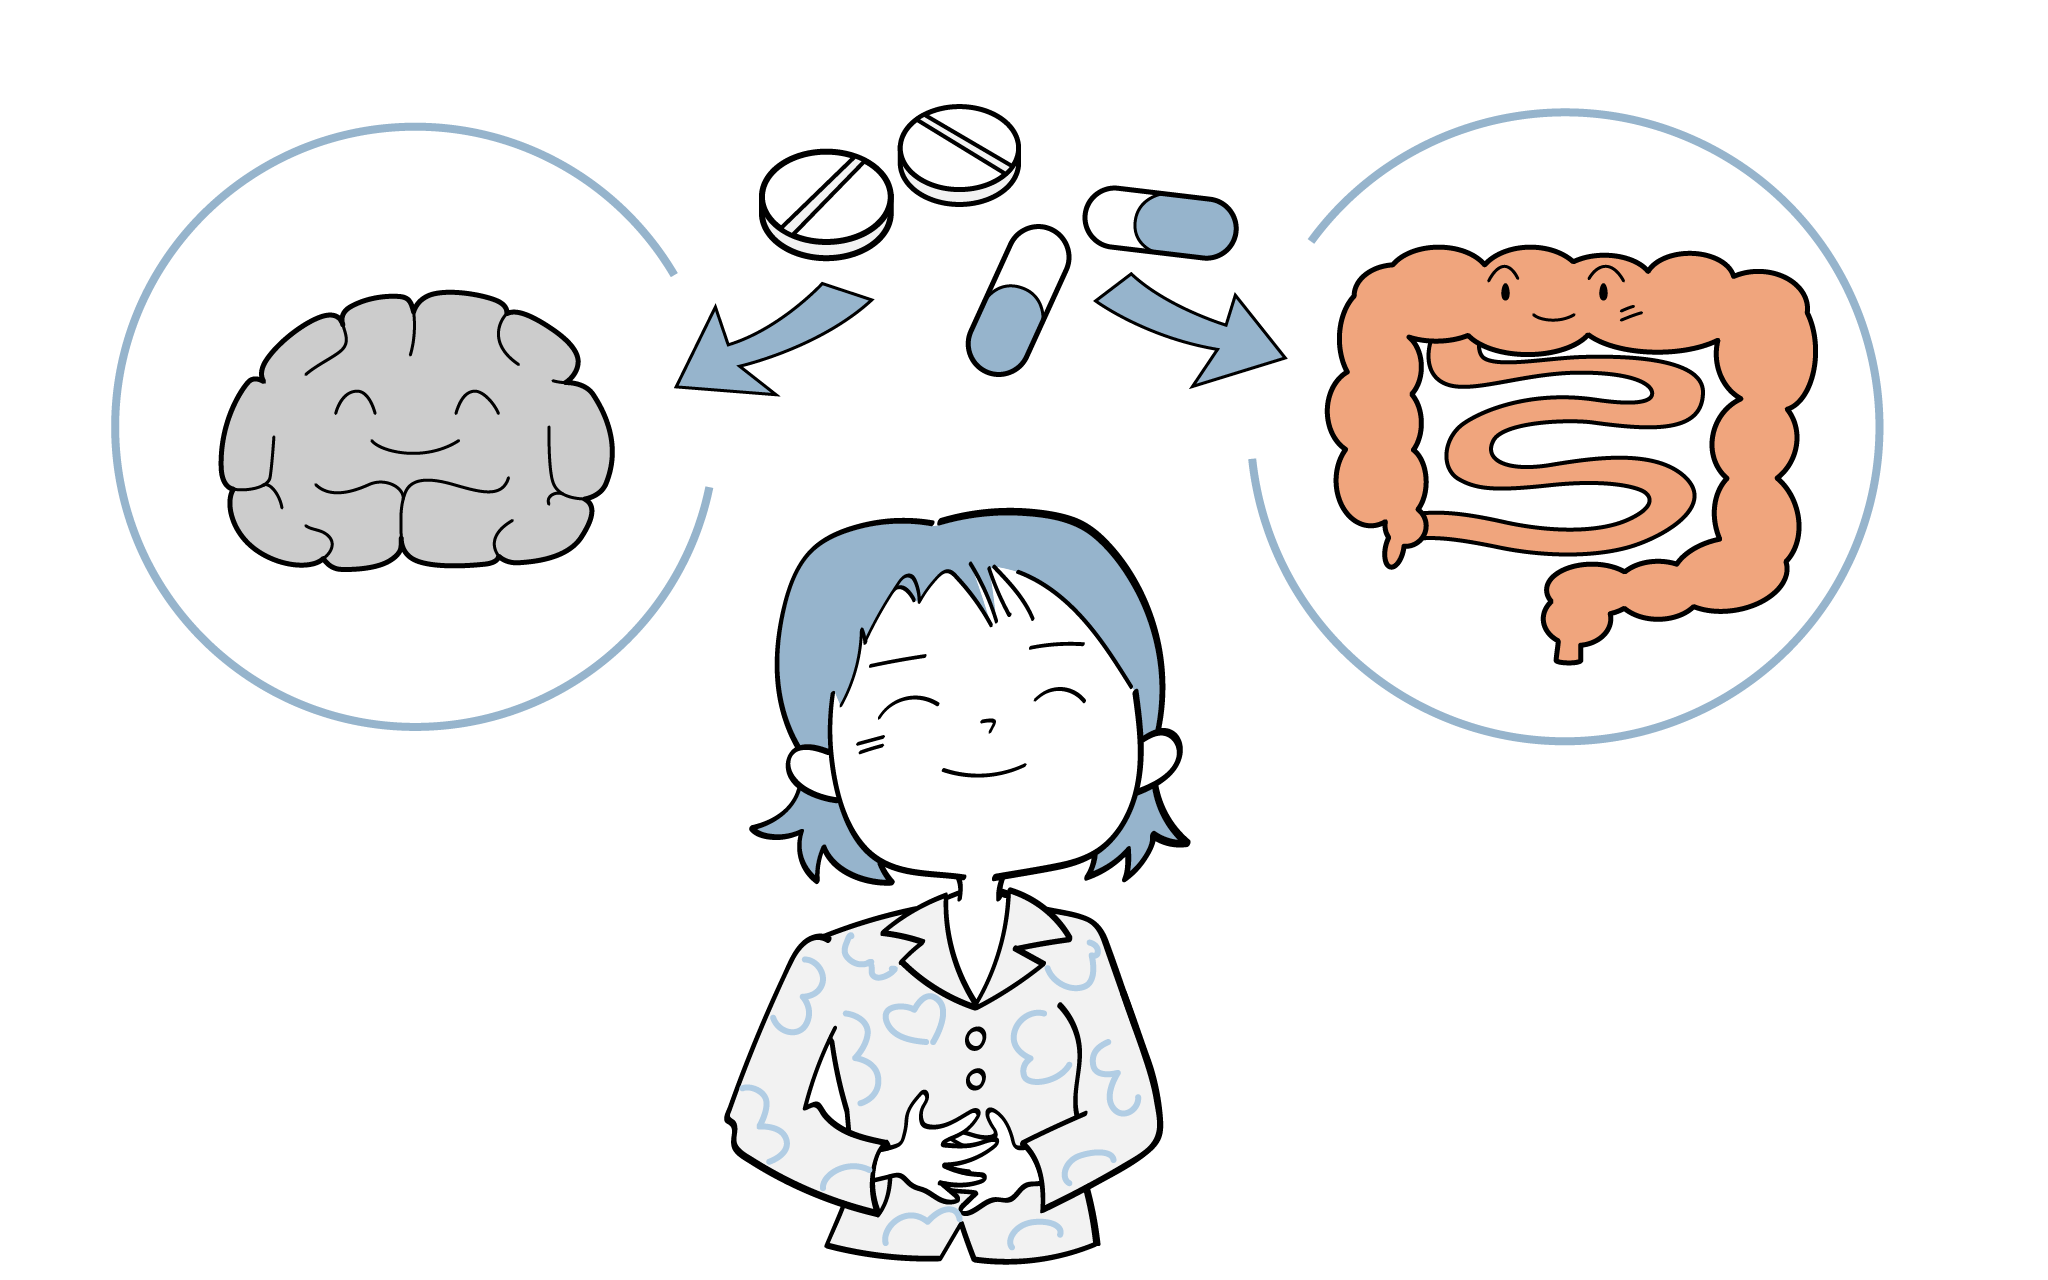 過敏性腸症候群での治療薬について、精神科医が詳しく解説します。